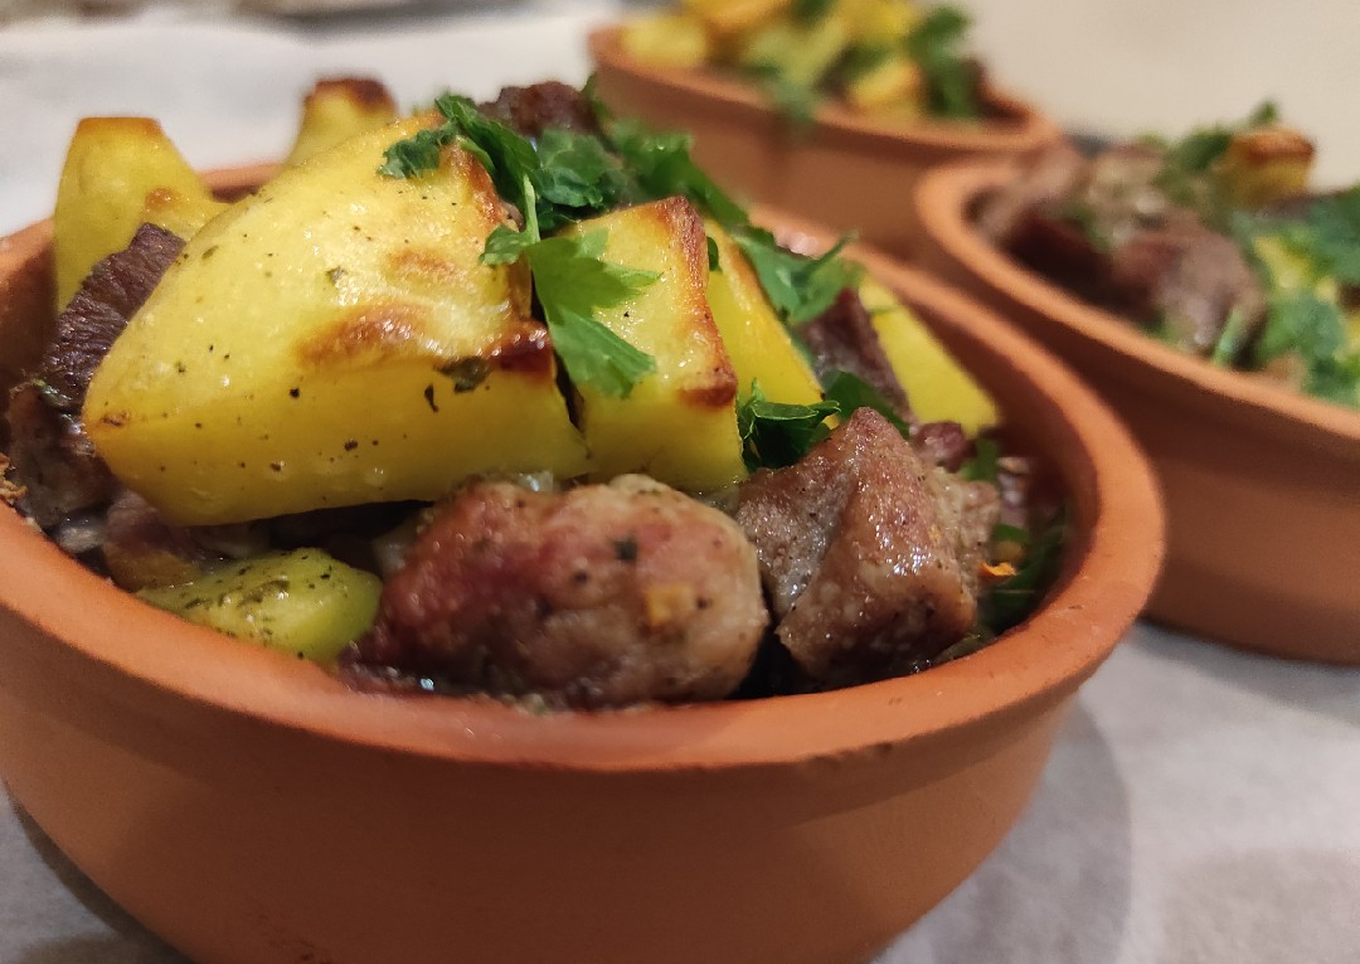 Жаркое из говядины с картошкой в горшочках в духовке рецепт с фото пошагово